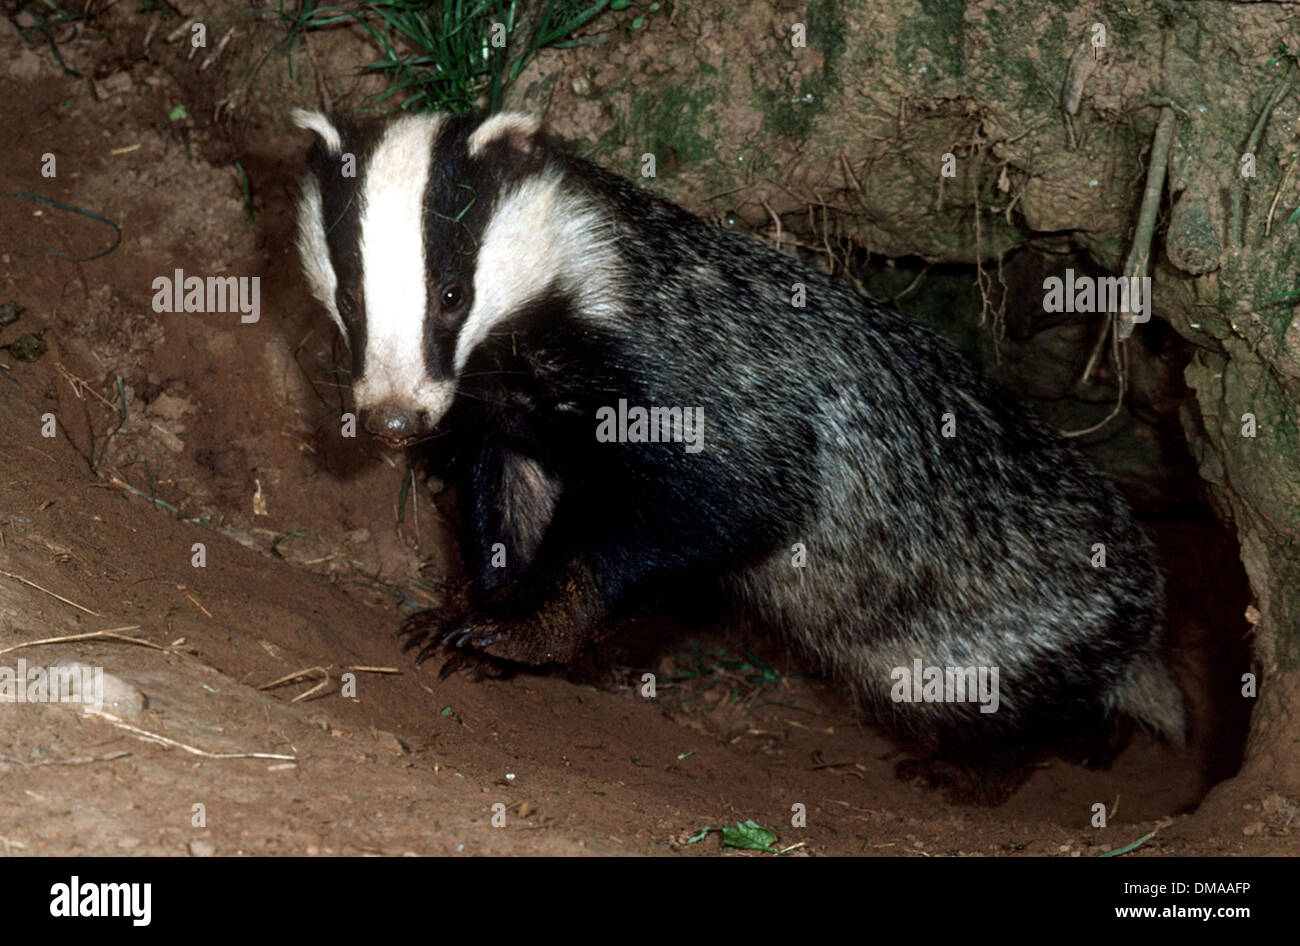 A badger. Stock Photo